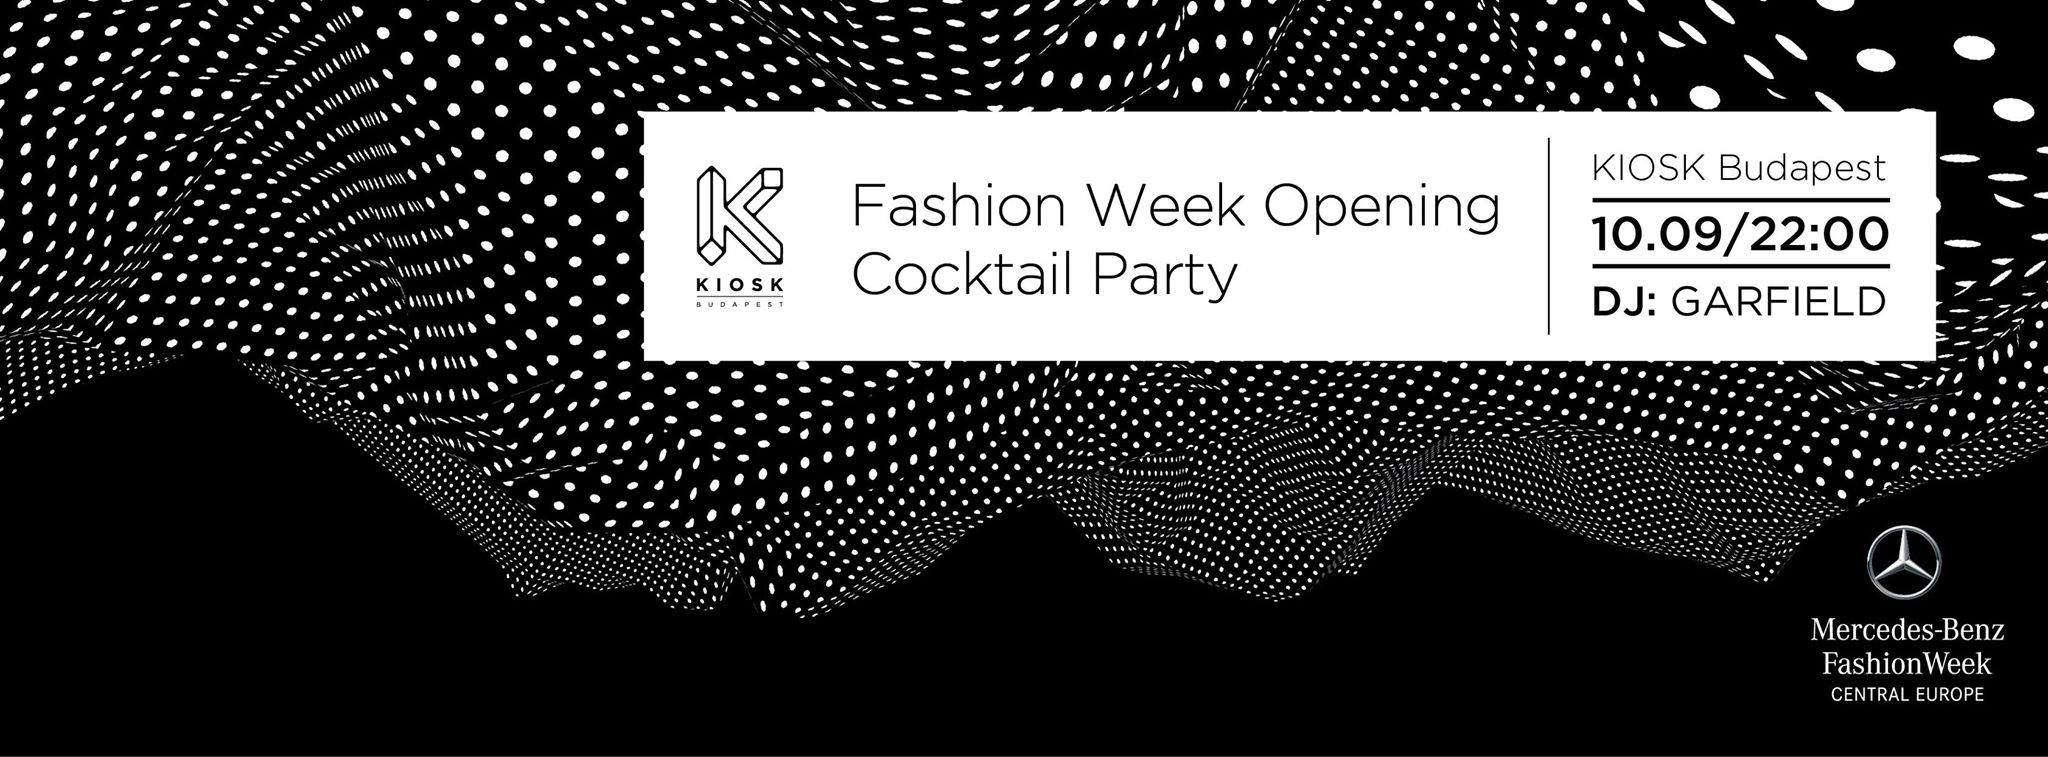 fashion_week_opening.jpg